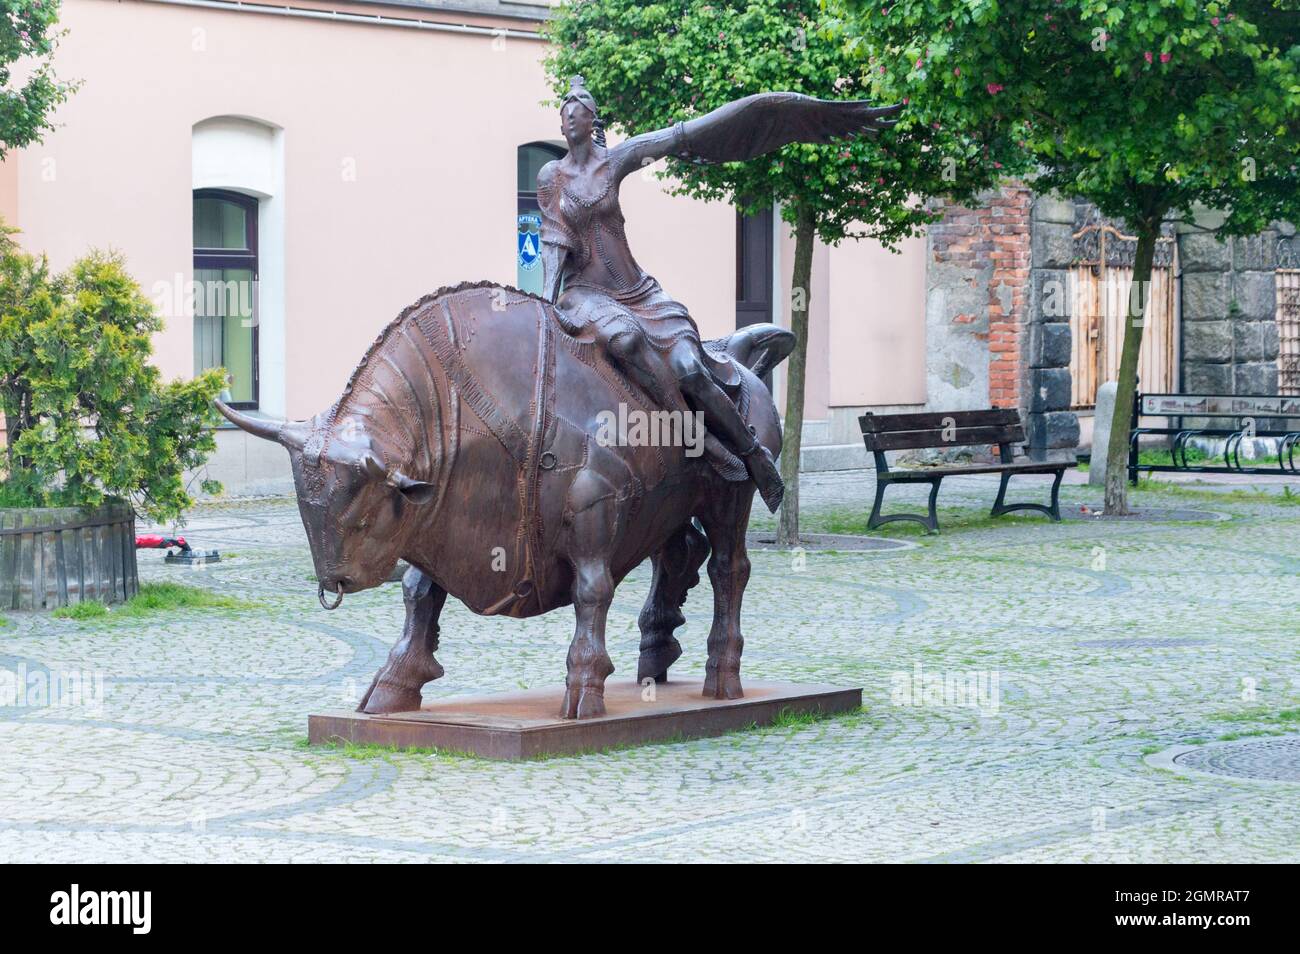 Jelenia Gora, Pologne - 2 juin 2021 : enlèvement de l'Europe (polonais : Porwanie Europy) sculpture de Vahan Bego. Banque D'Images